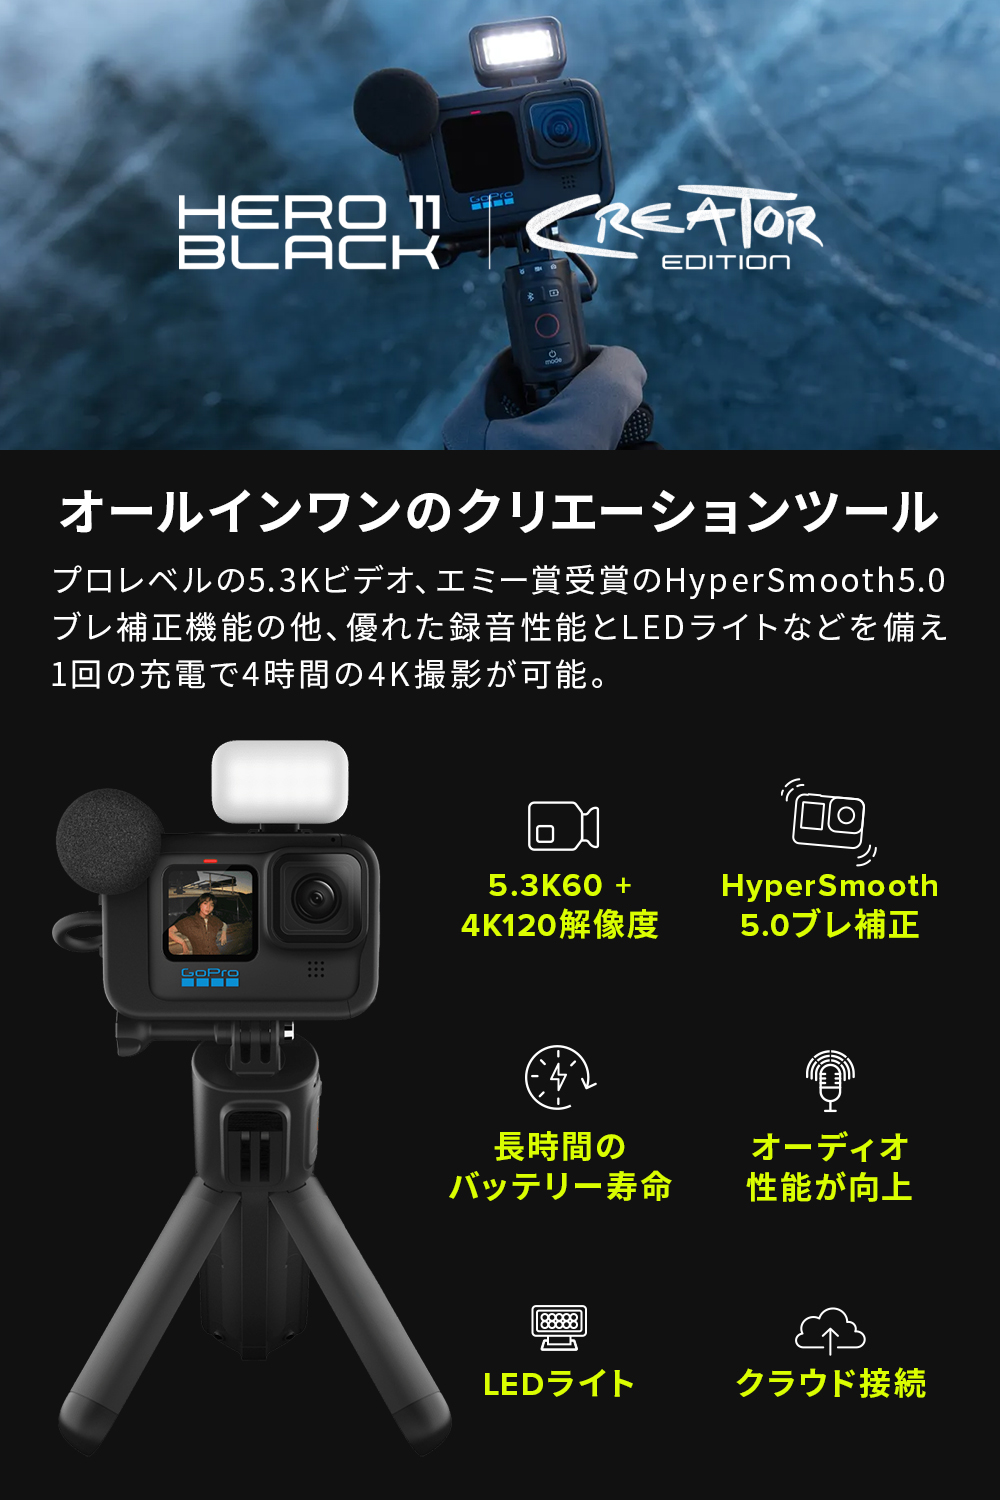 【GoPro公式限定】HERO11 Black クリエーターエディション Volta + メディアモジュラー + ライトモジュラー +  Enduroバッテリー + 認定SDカード Creator Edition クリエイター ボルタ ウェアラブルカメラ アクションカメラ ゴープロ11  gopro11 